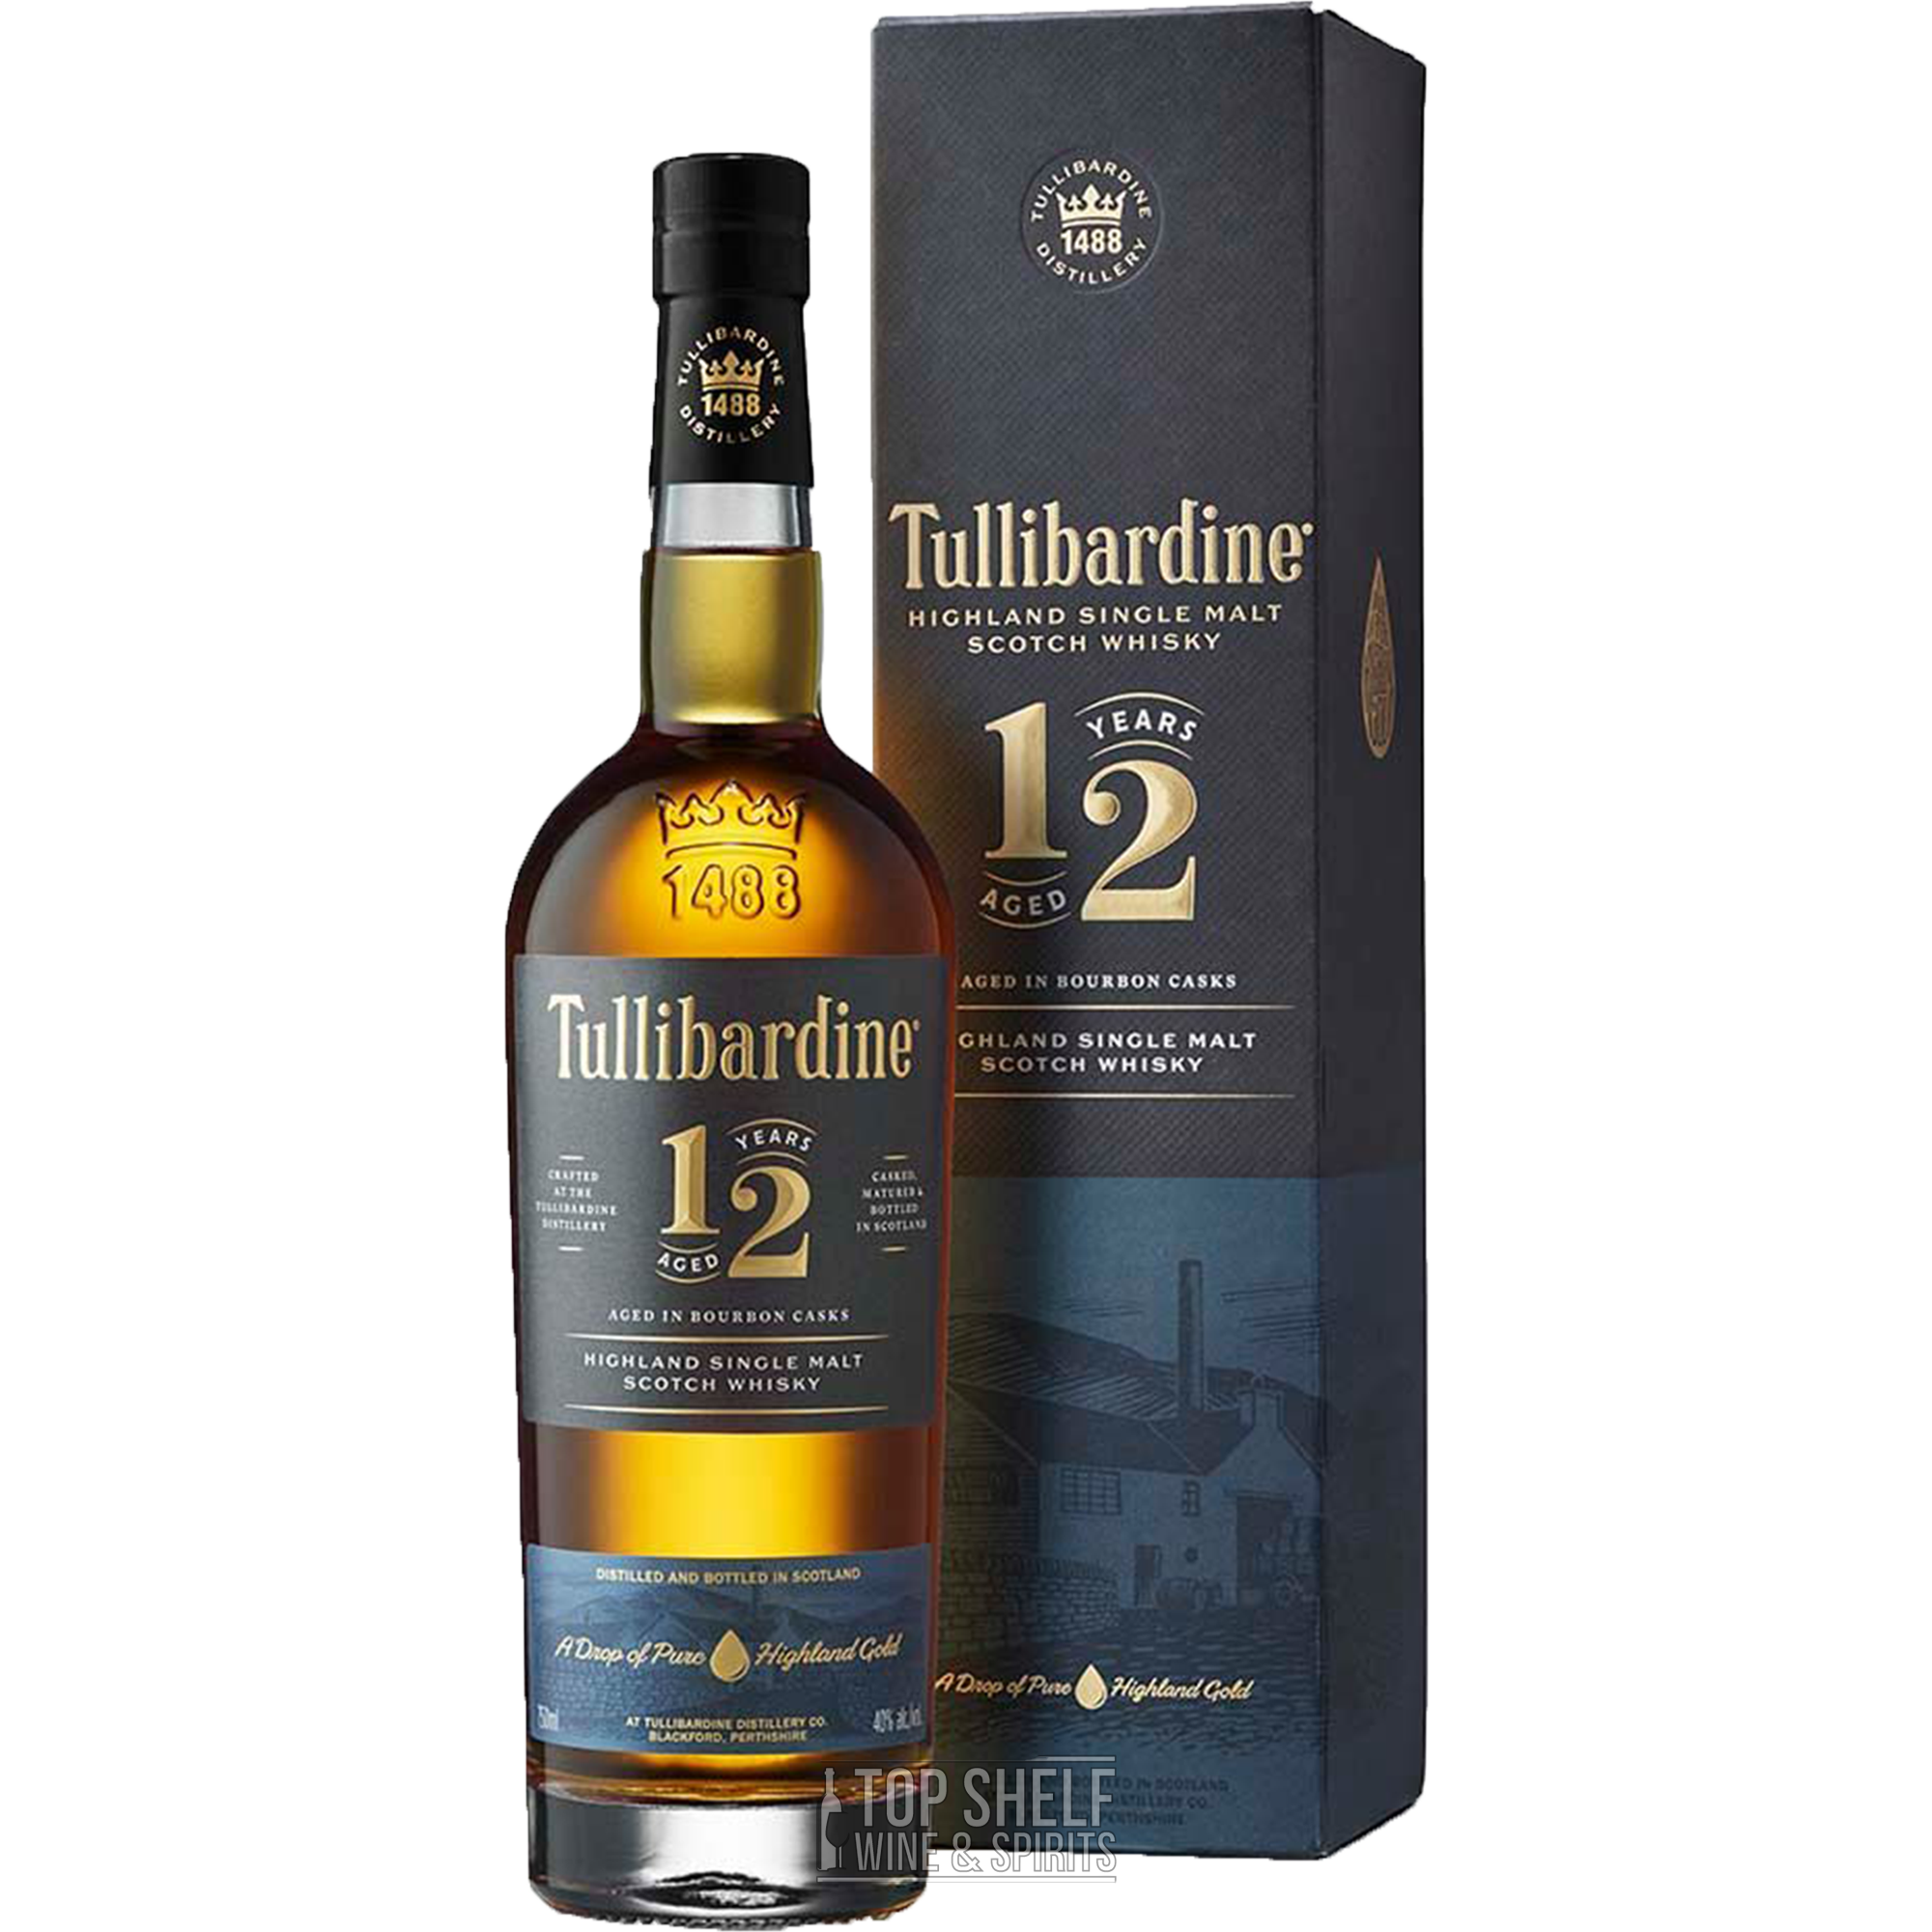 Tullibardine 12 Year Highland Single Malt Scotch Whisky